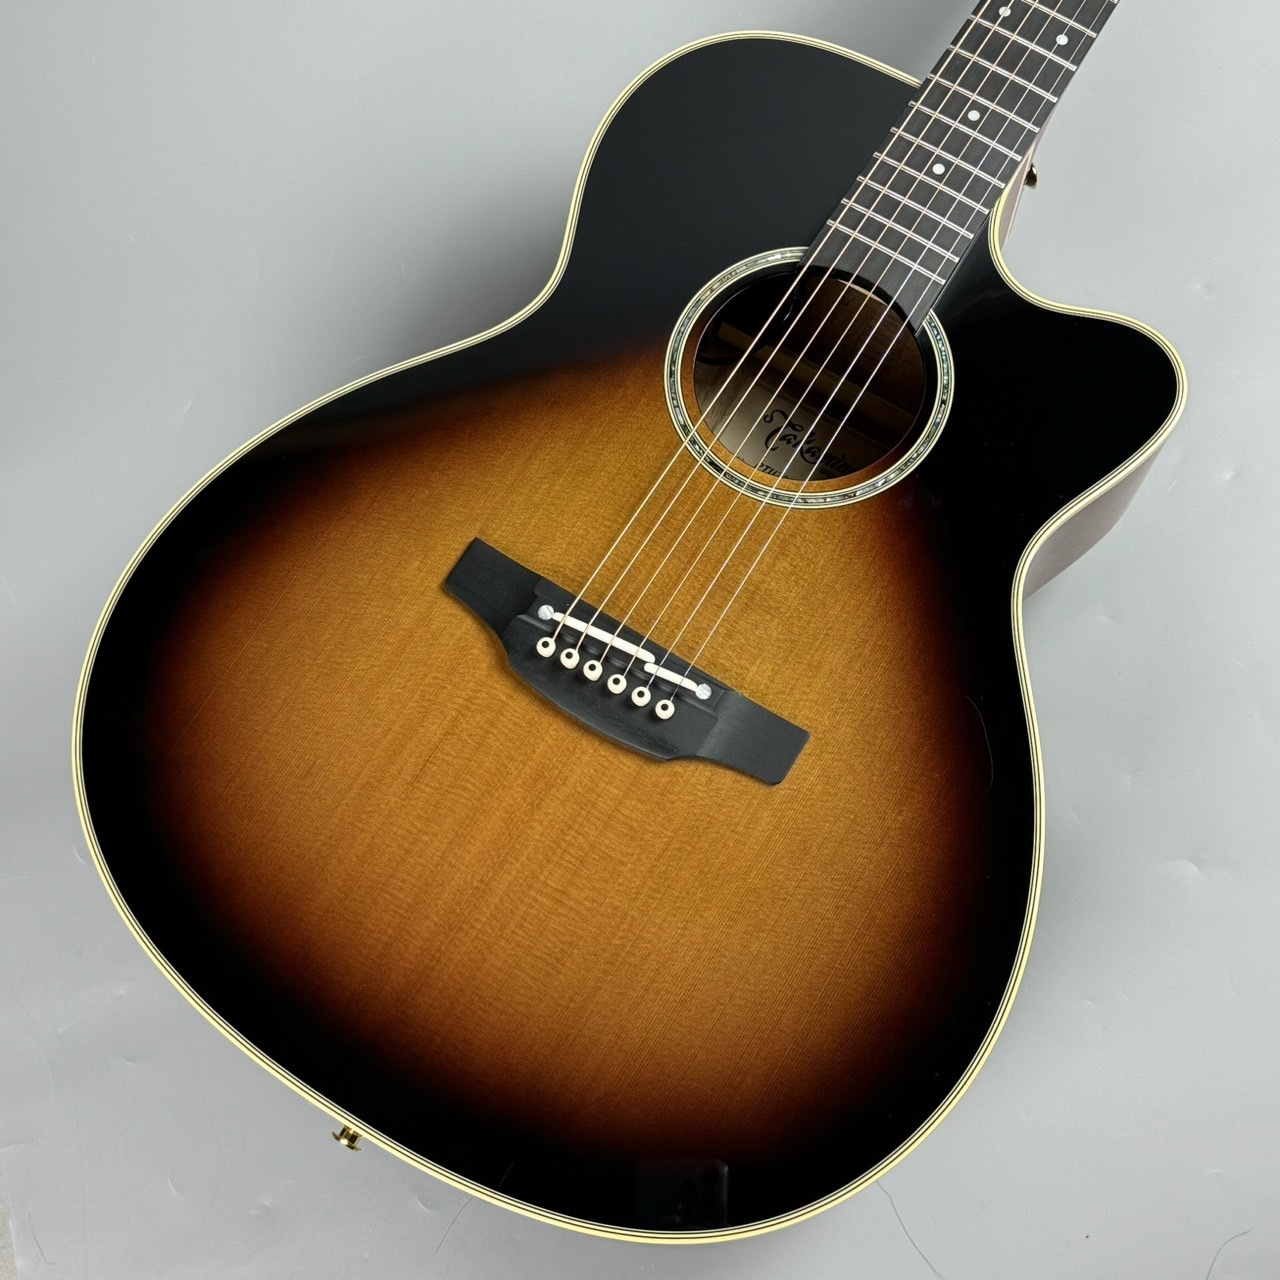 楽器・機材アコースティックギター タカミネ エレアコ. Made in Japan